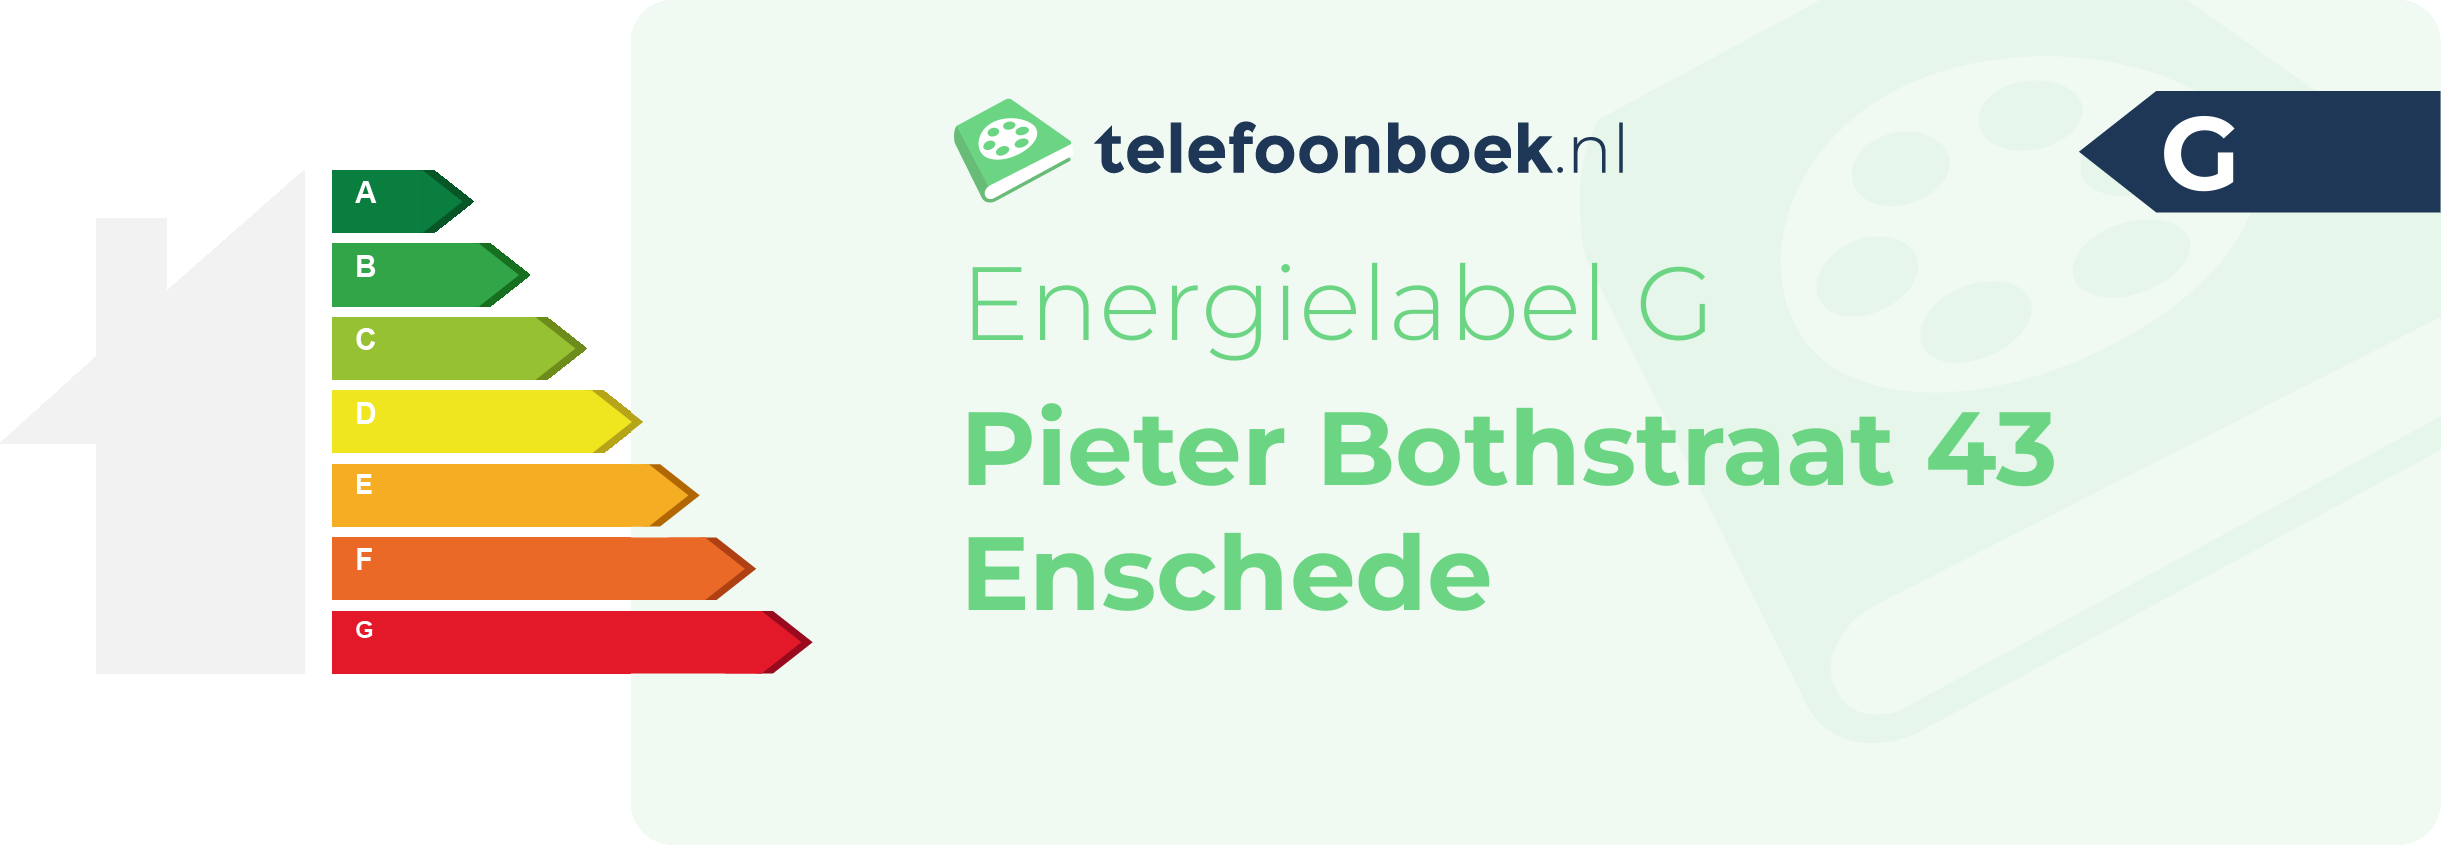 Energielabel Pieter Bothstraat 43 Enschede